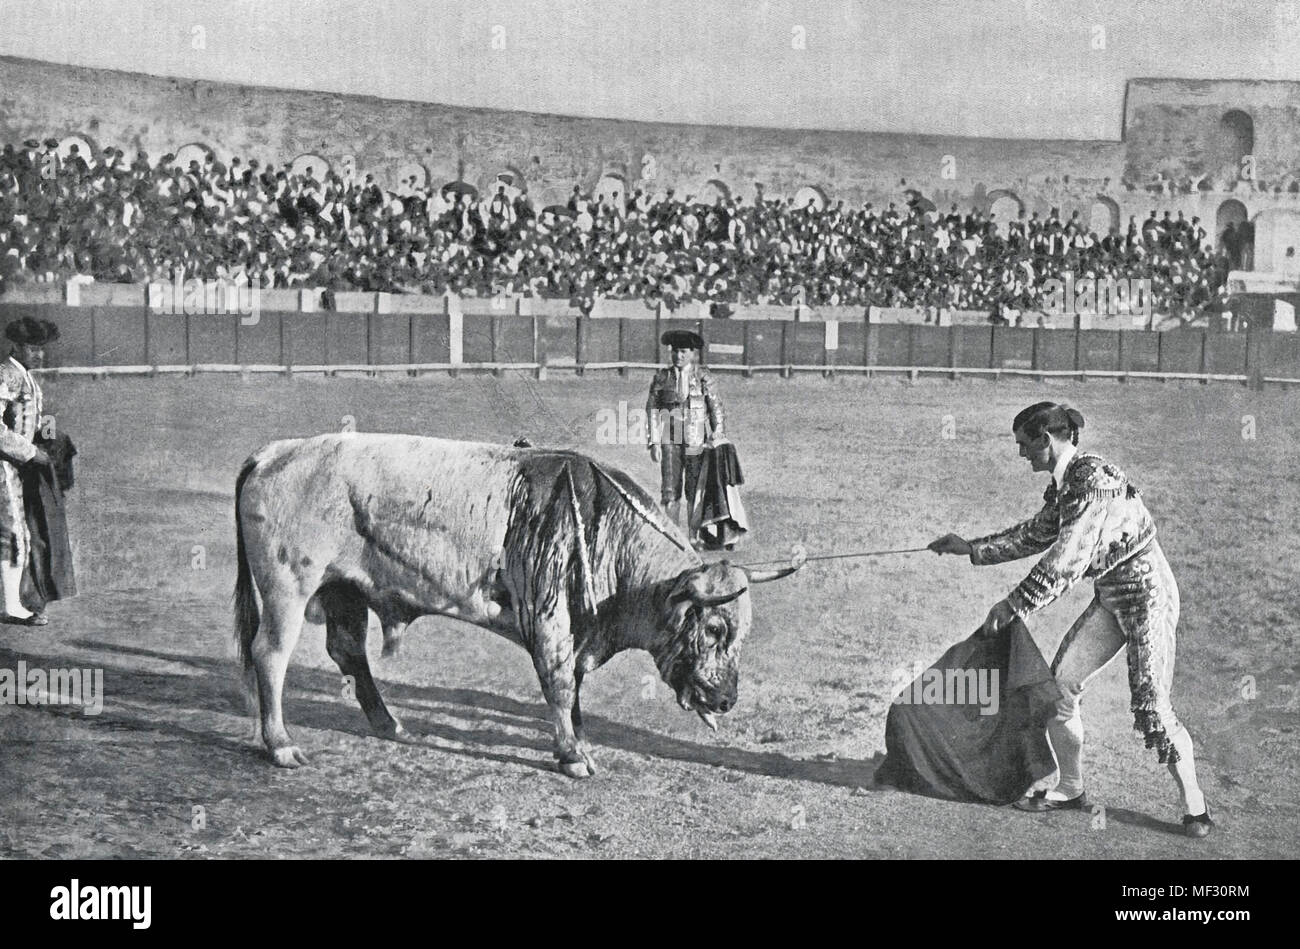 Bull Races - The Descabello Stock Photo